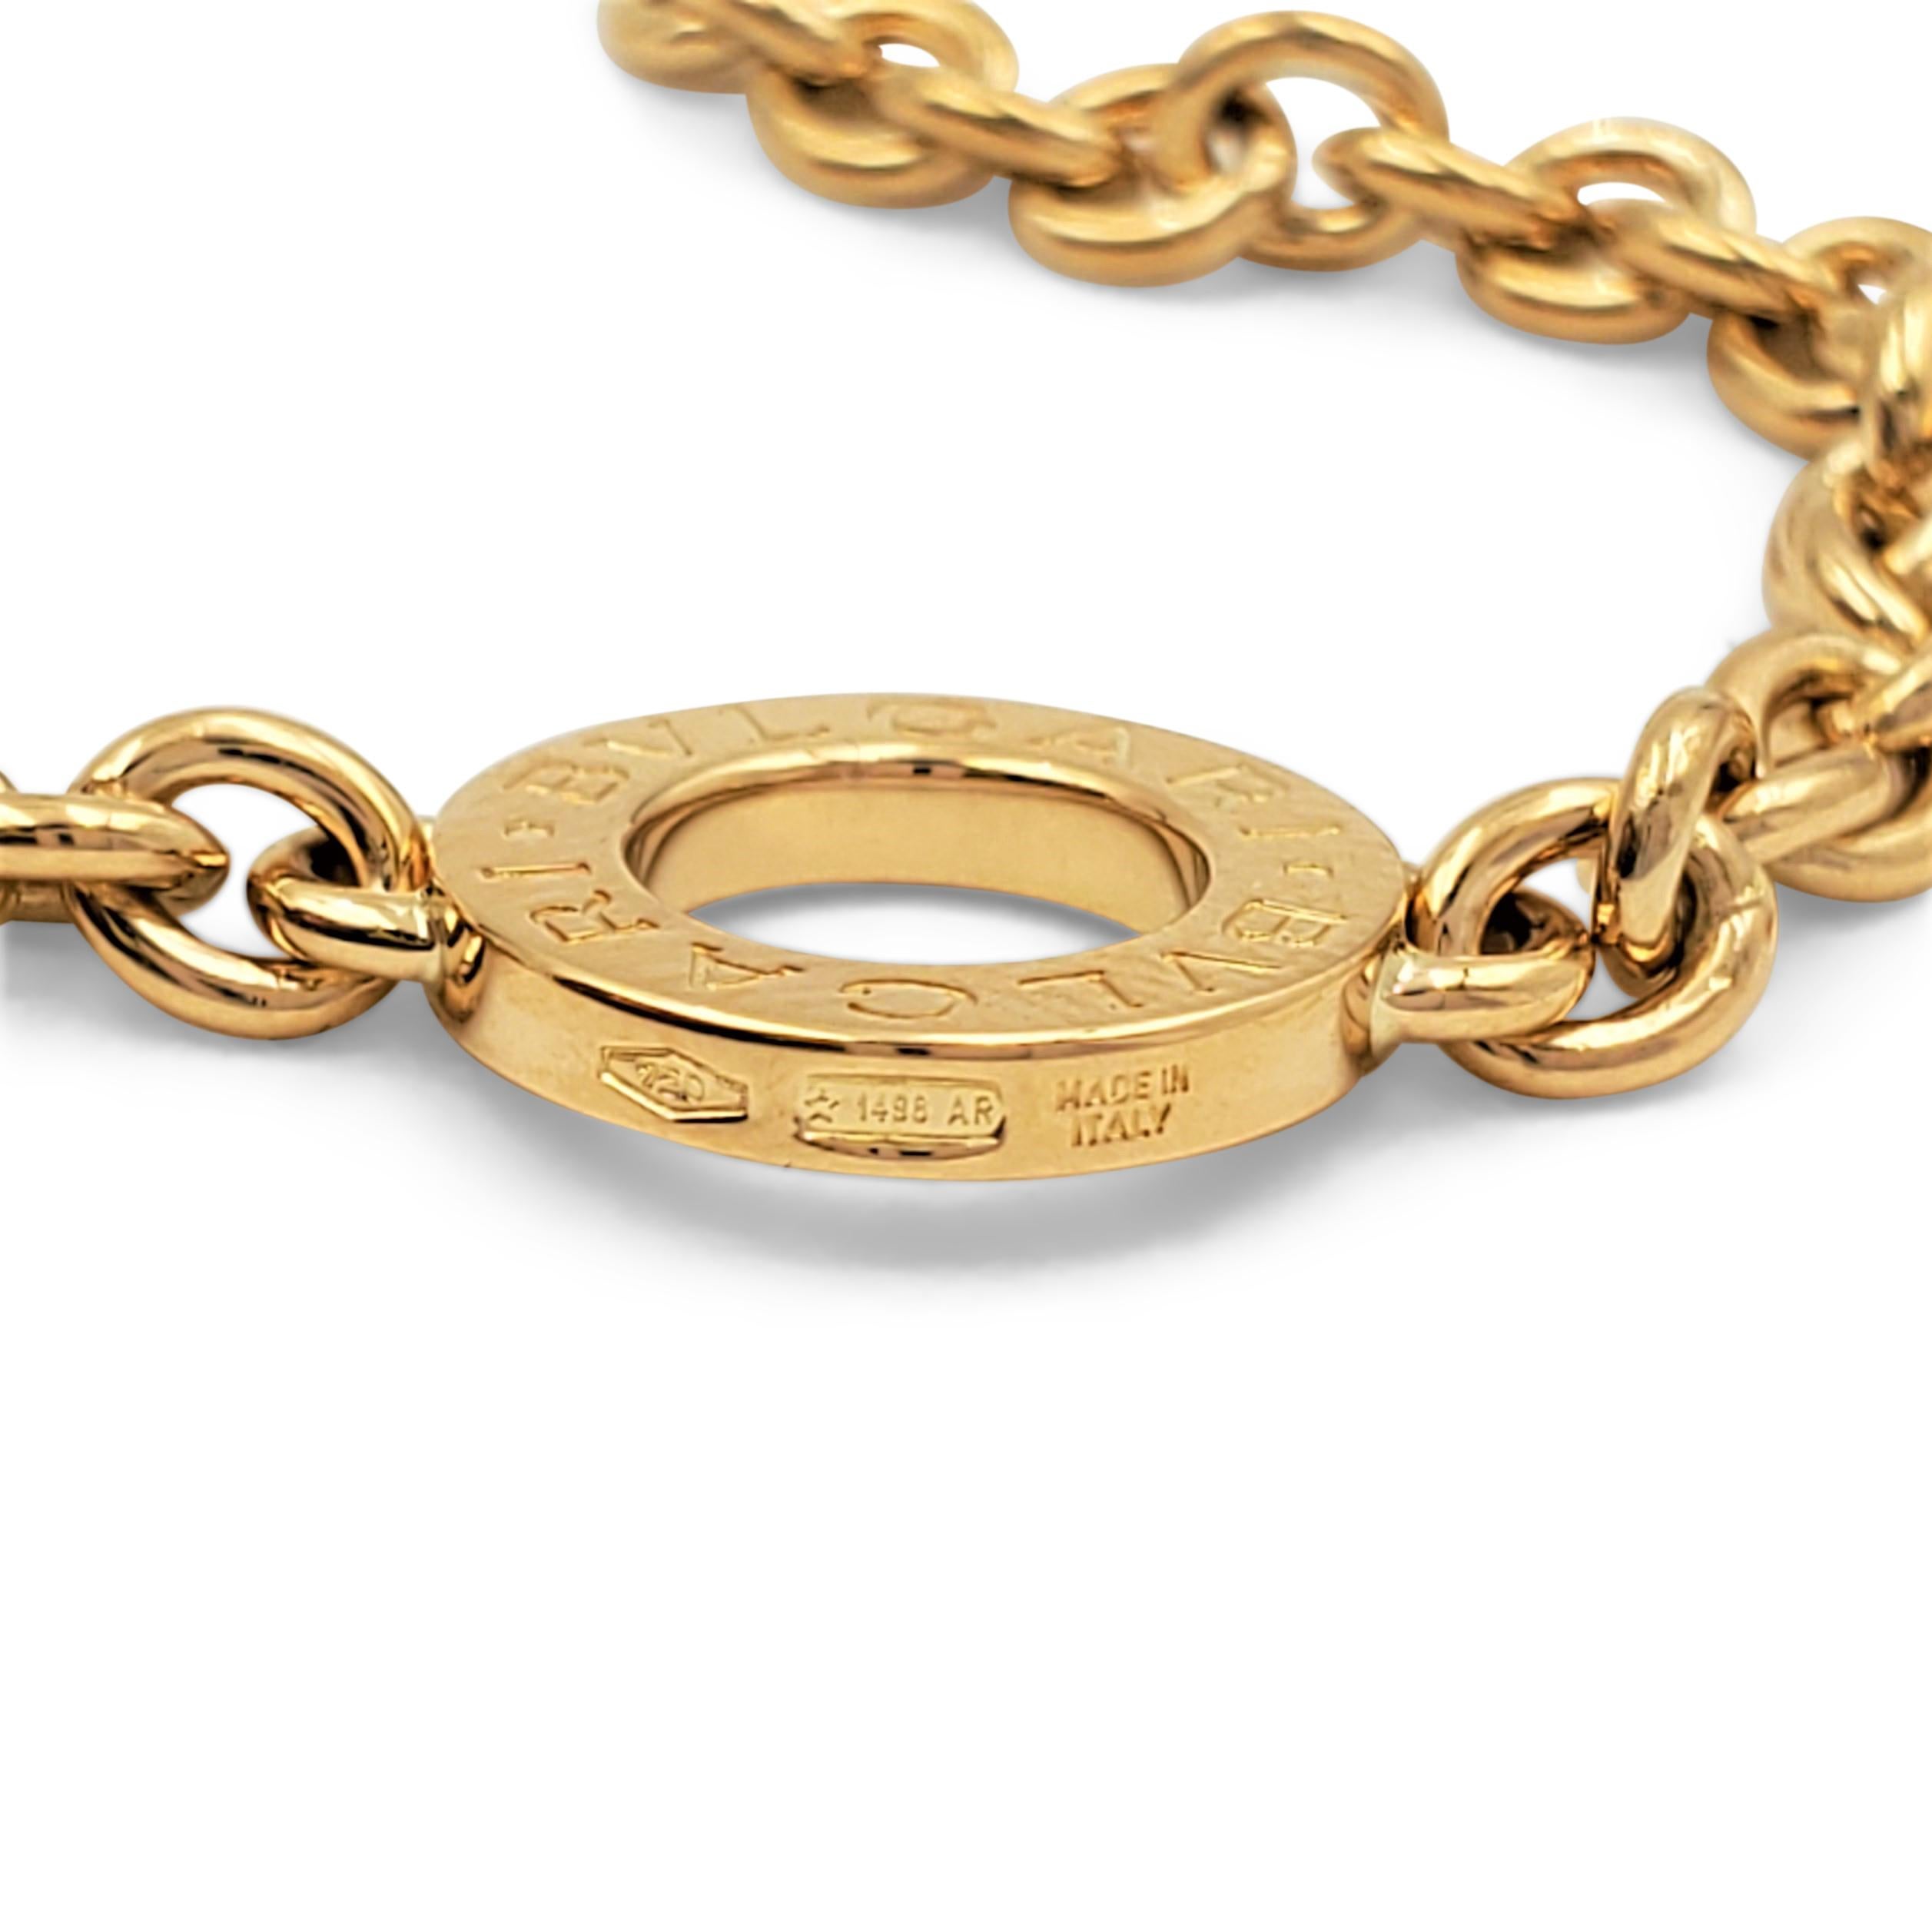 Bvlagri 'Bvlgari-Bvlgari' Signature Yellow Gold Long Chain Necklace 1